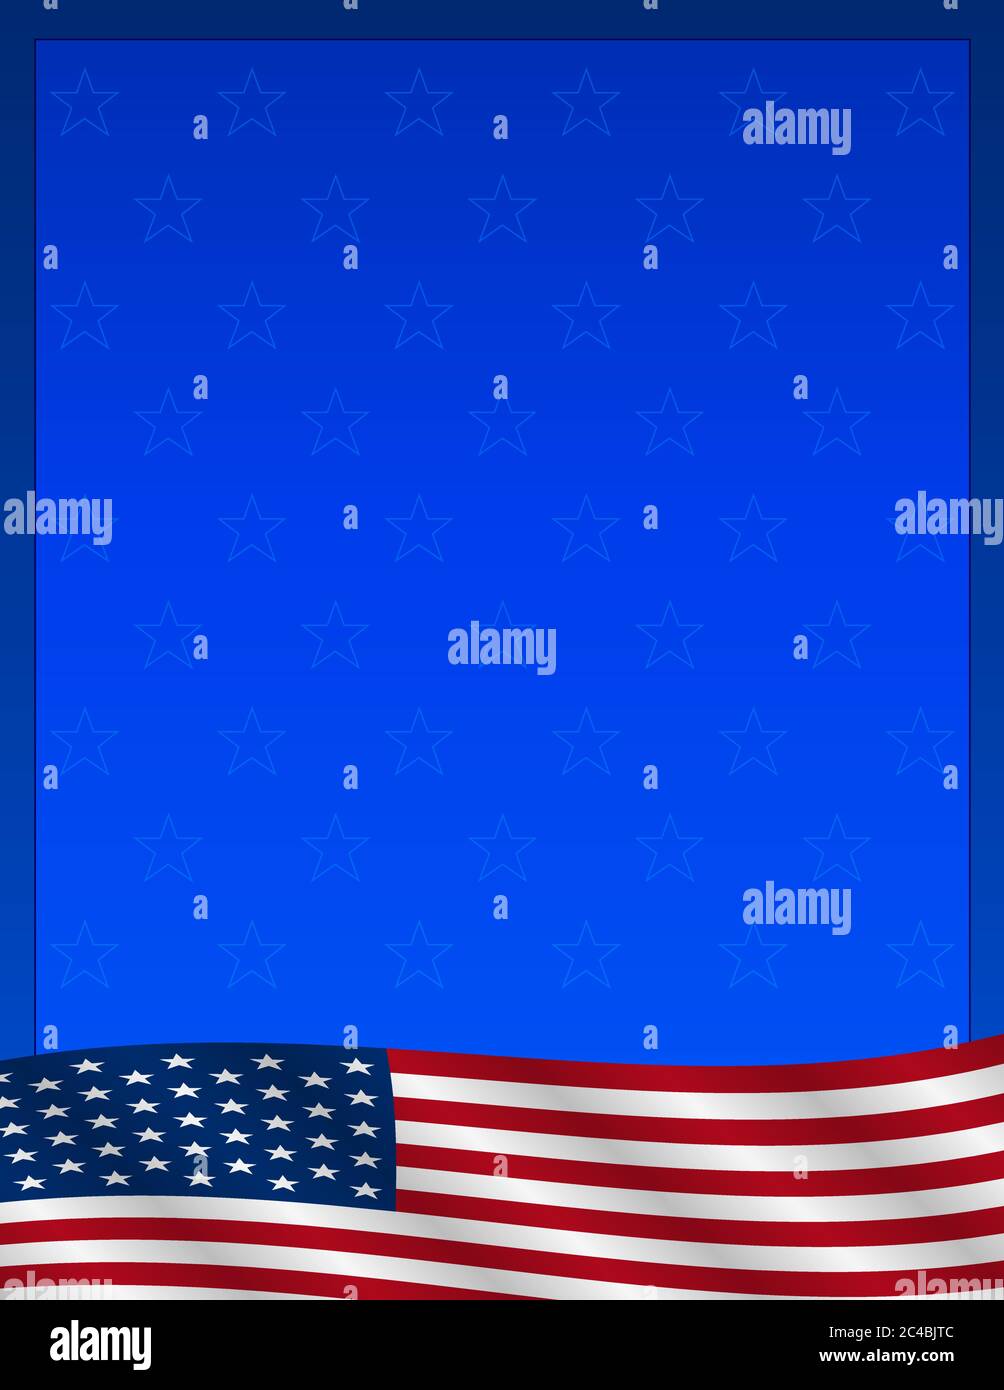 Vektor-Illustration der USA Flagge mit Sternen auf blauem Hintergrund Stock Vektor